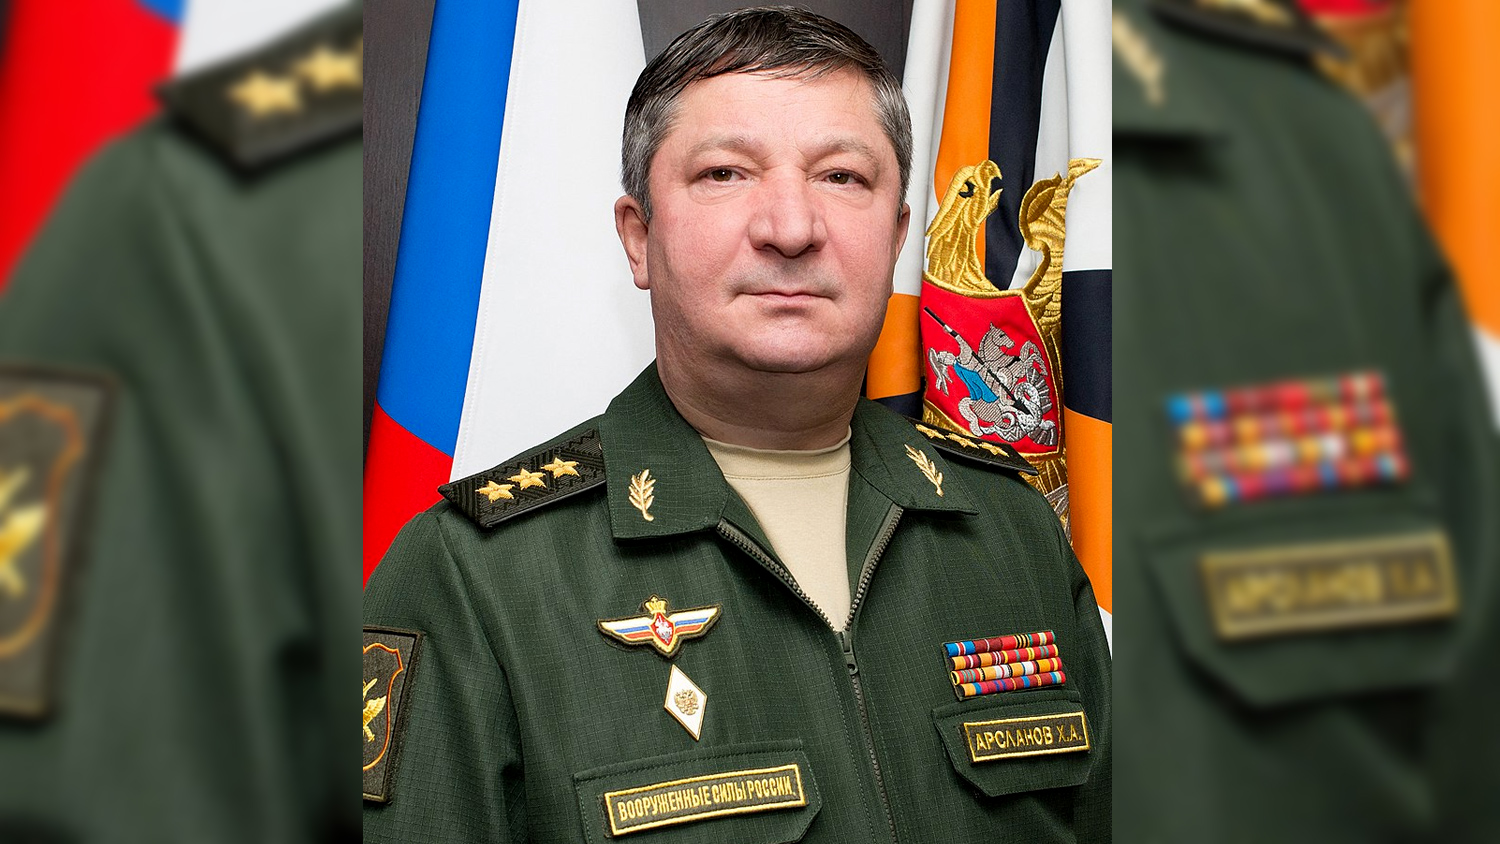 Ձերբակալվել է Ռուսաստանի ԶՈւ գլխավոր շտաբի պետի տեղակալ` գեներալ-գնդապետ Խալիլ Արսլանովը